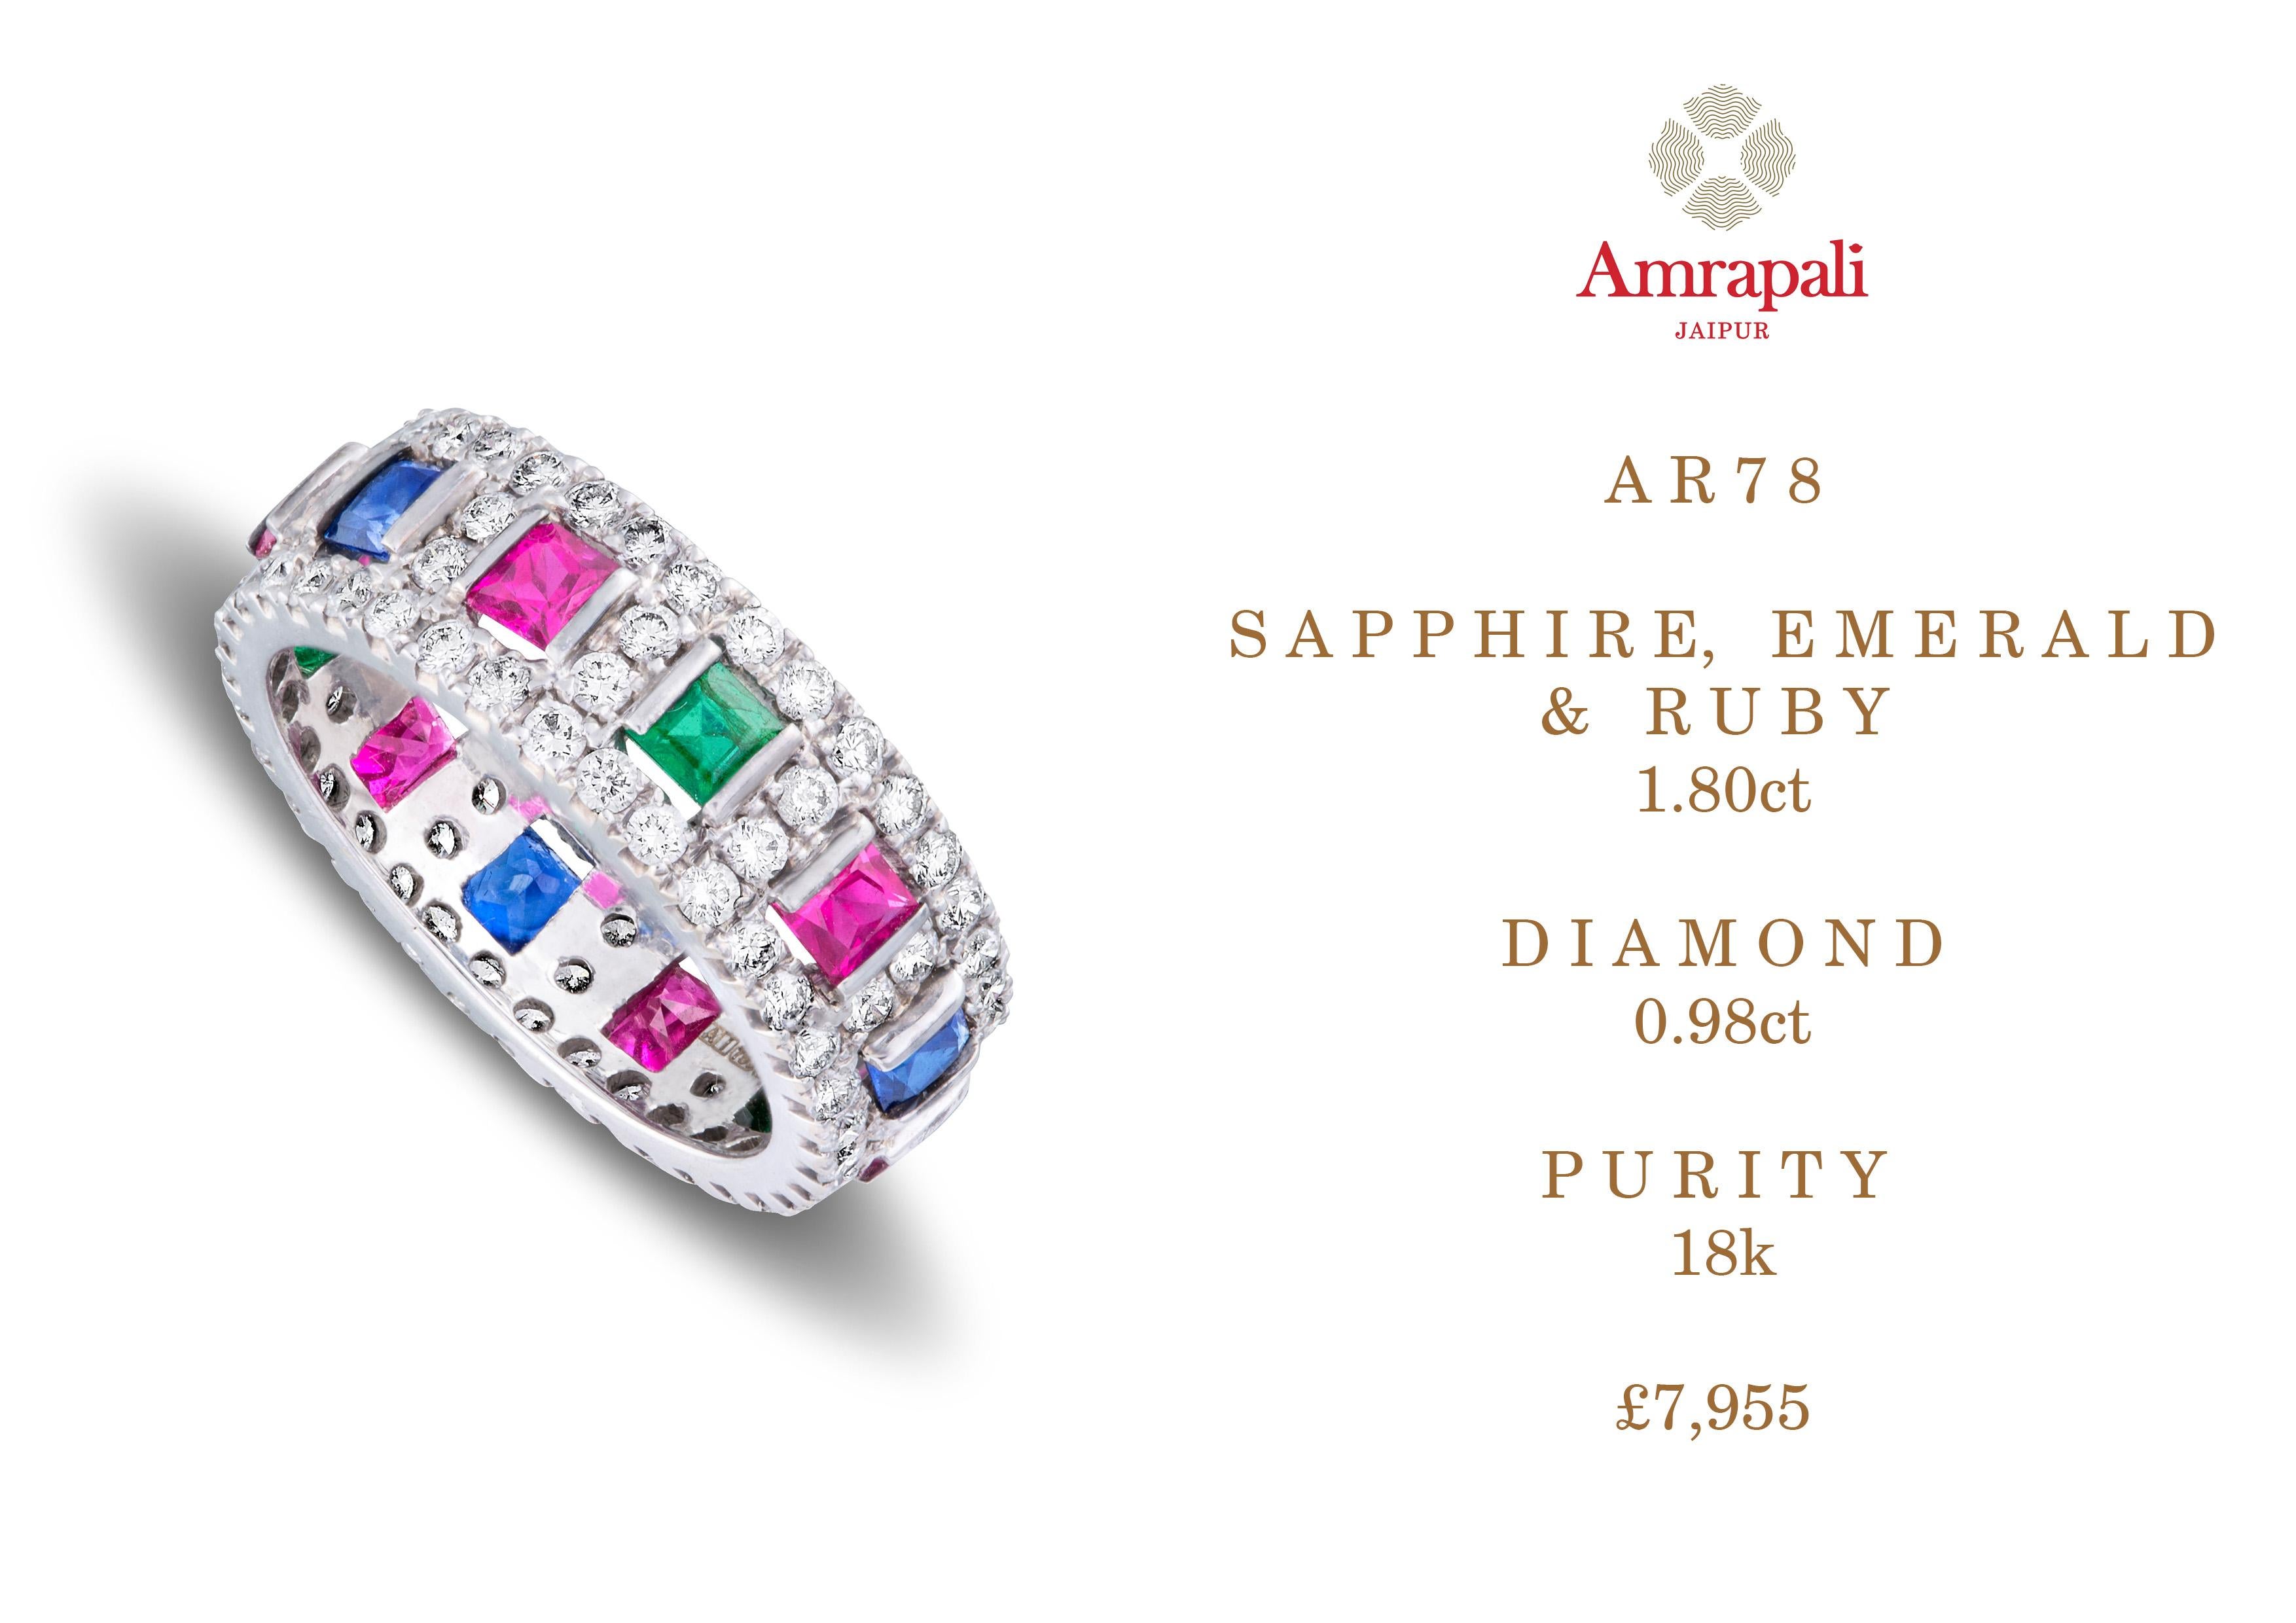 Amrapali Jewels 18k gold, Sapphire & Diamond ring  

Emerald, Ruby & Sapphire weight - 1.80ct
Diamond weight - 0.98ct  

Ring size - 51


